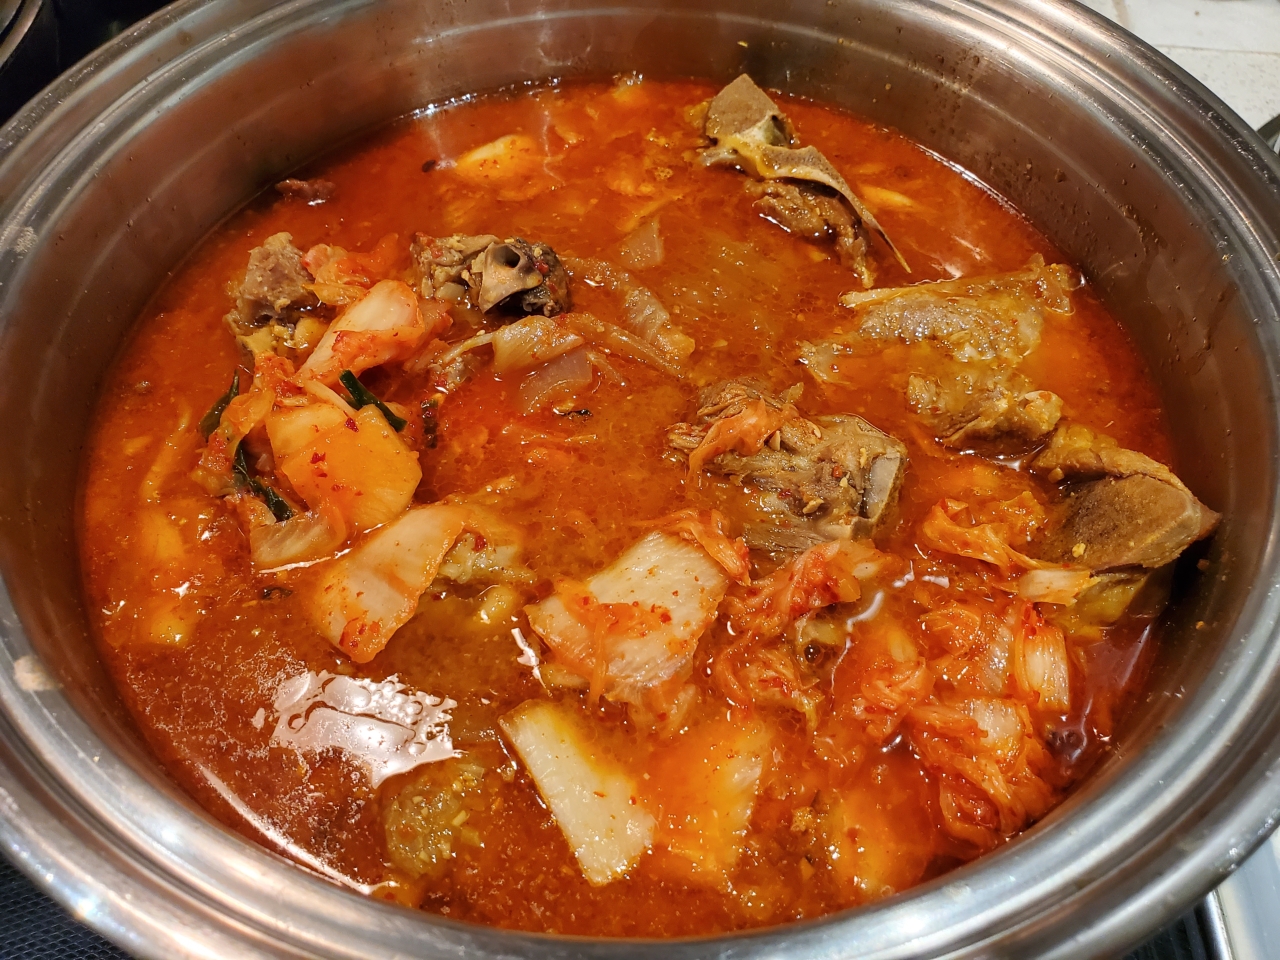 韩式猪骨汤